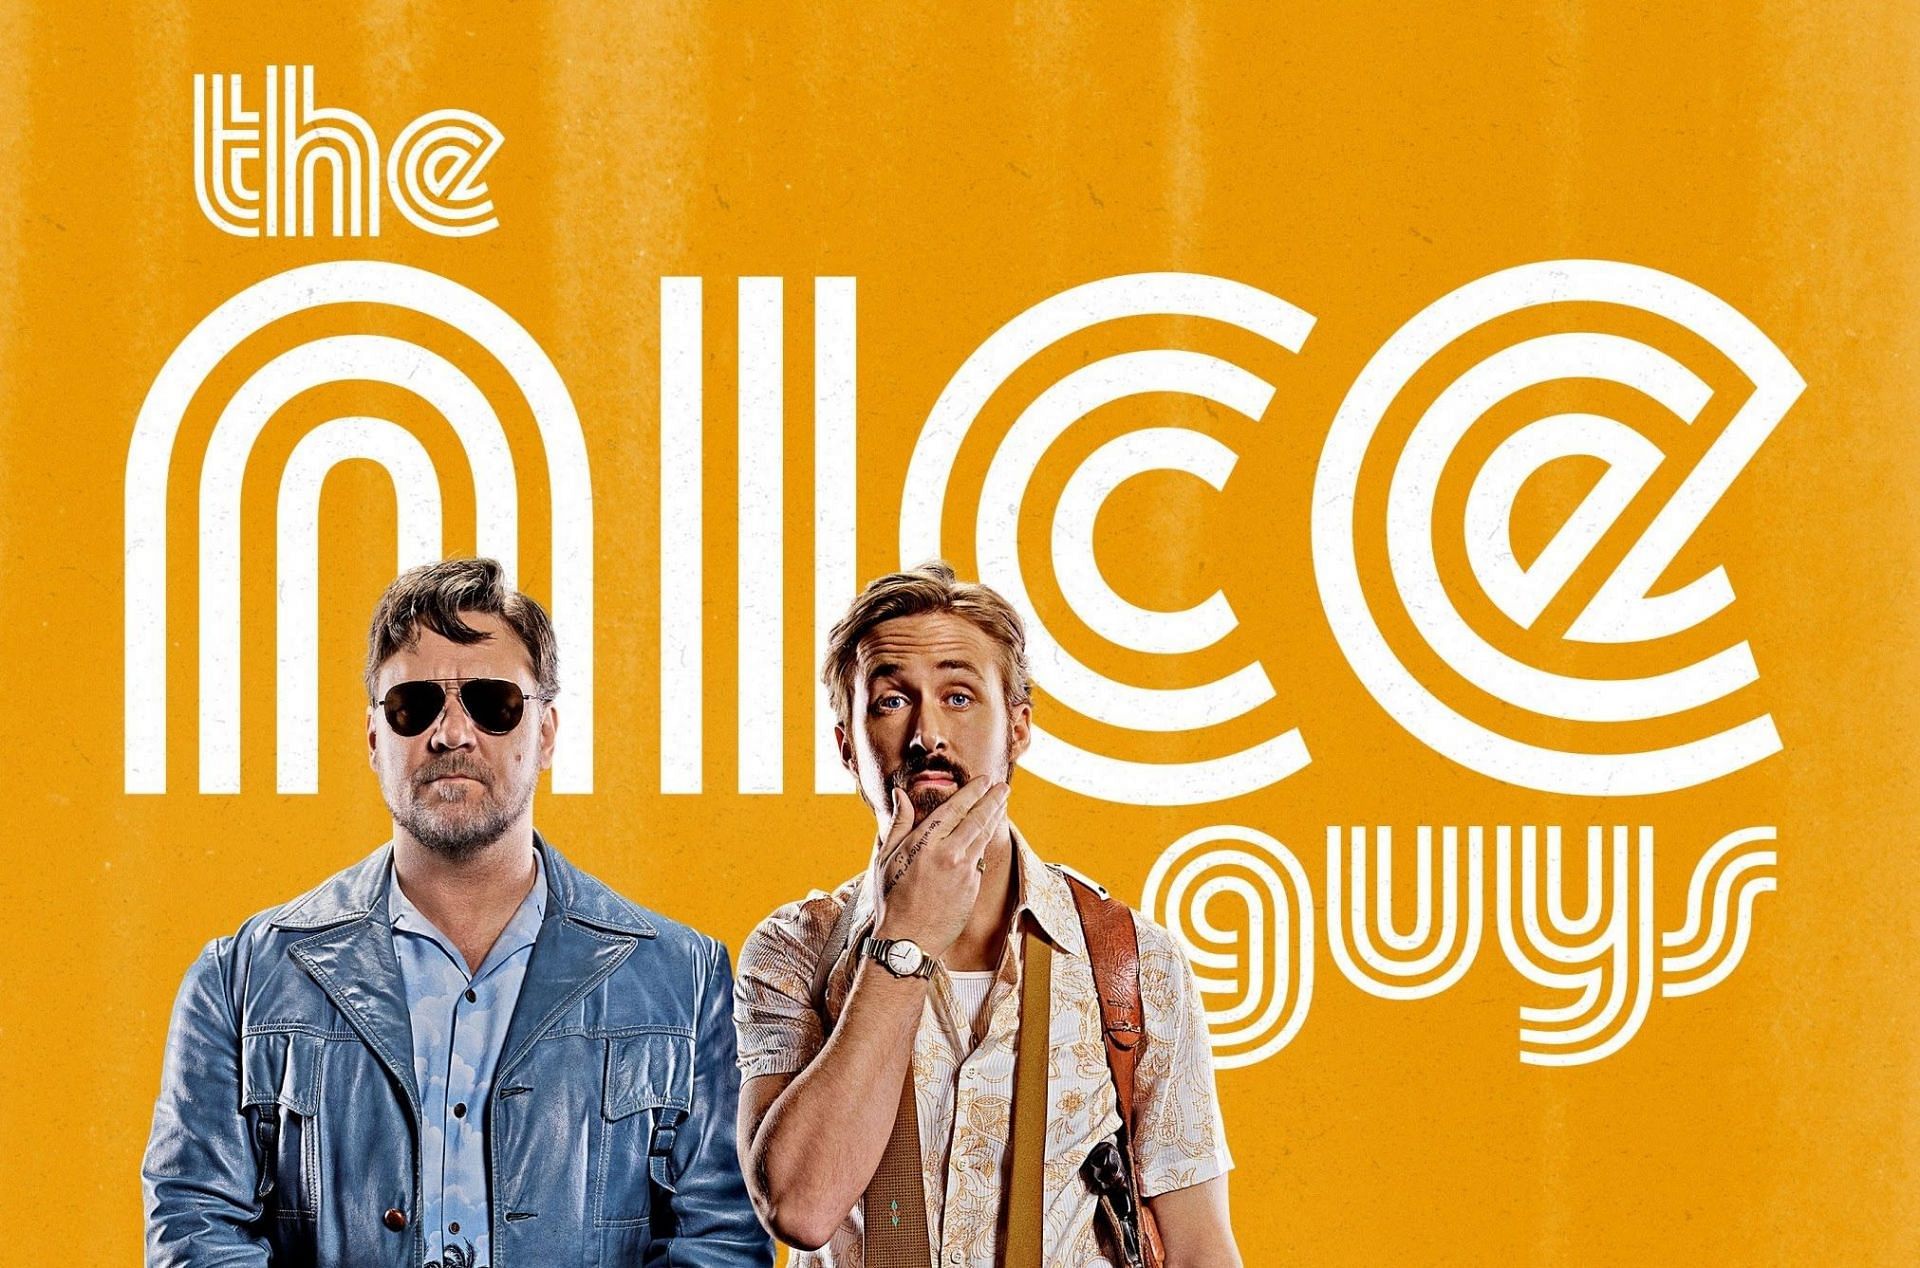 The Nice Guys (Image via Warner Bros)